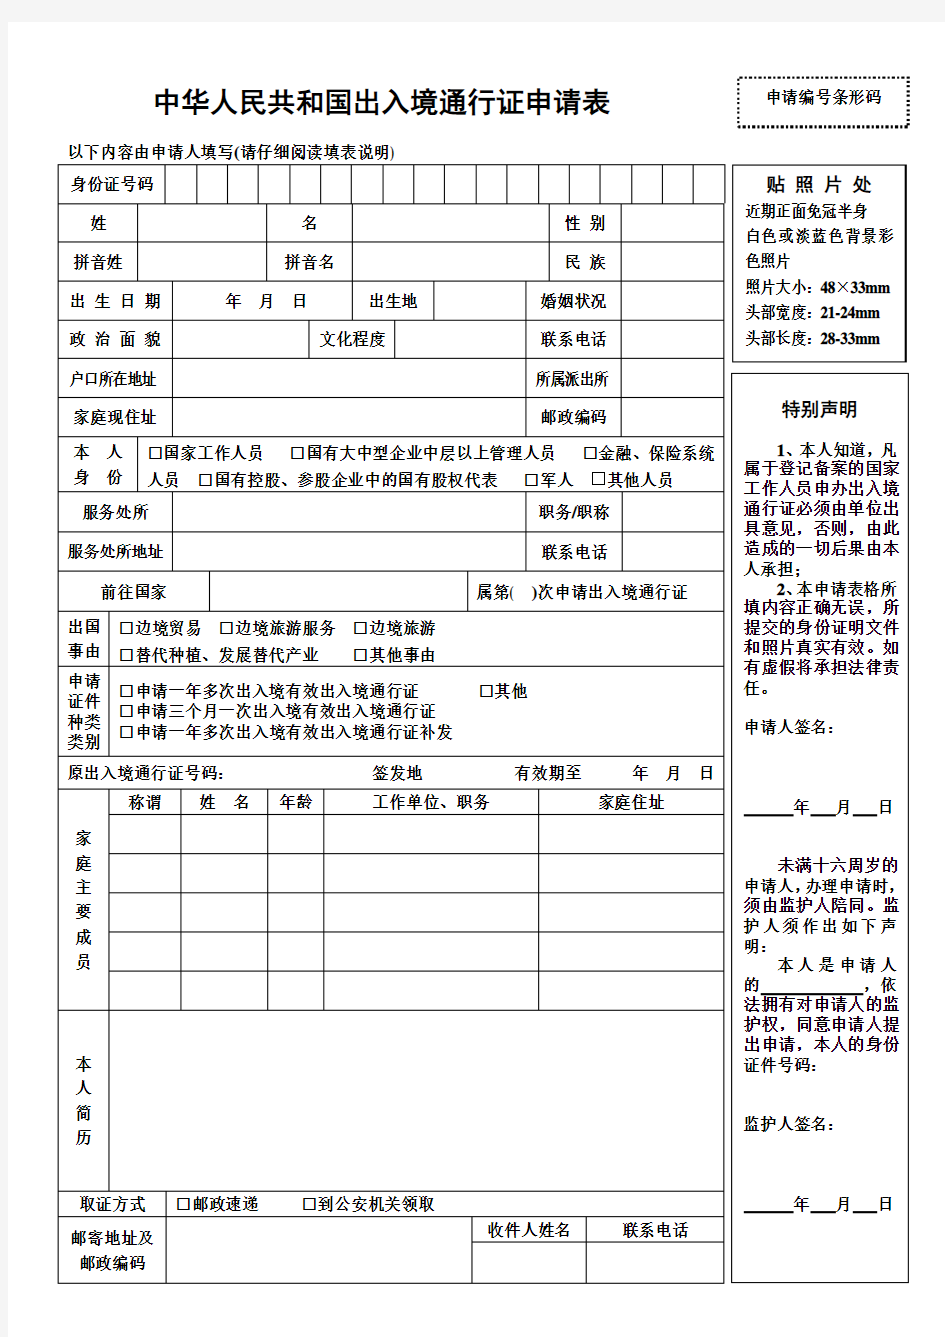 中华人民共和国出入境通行证申请表